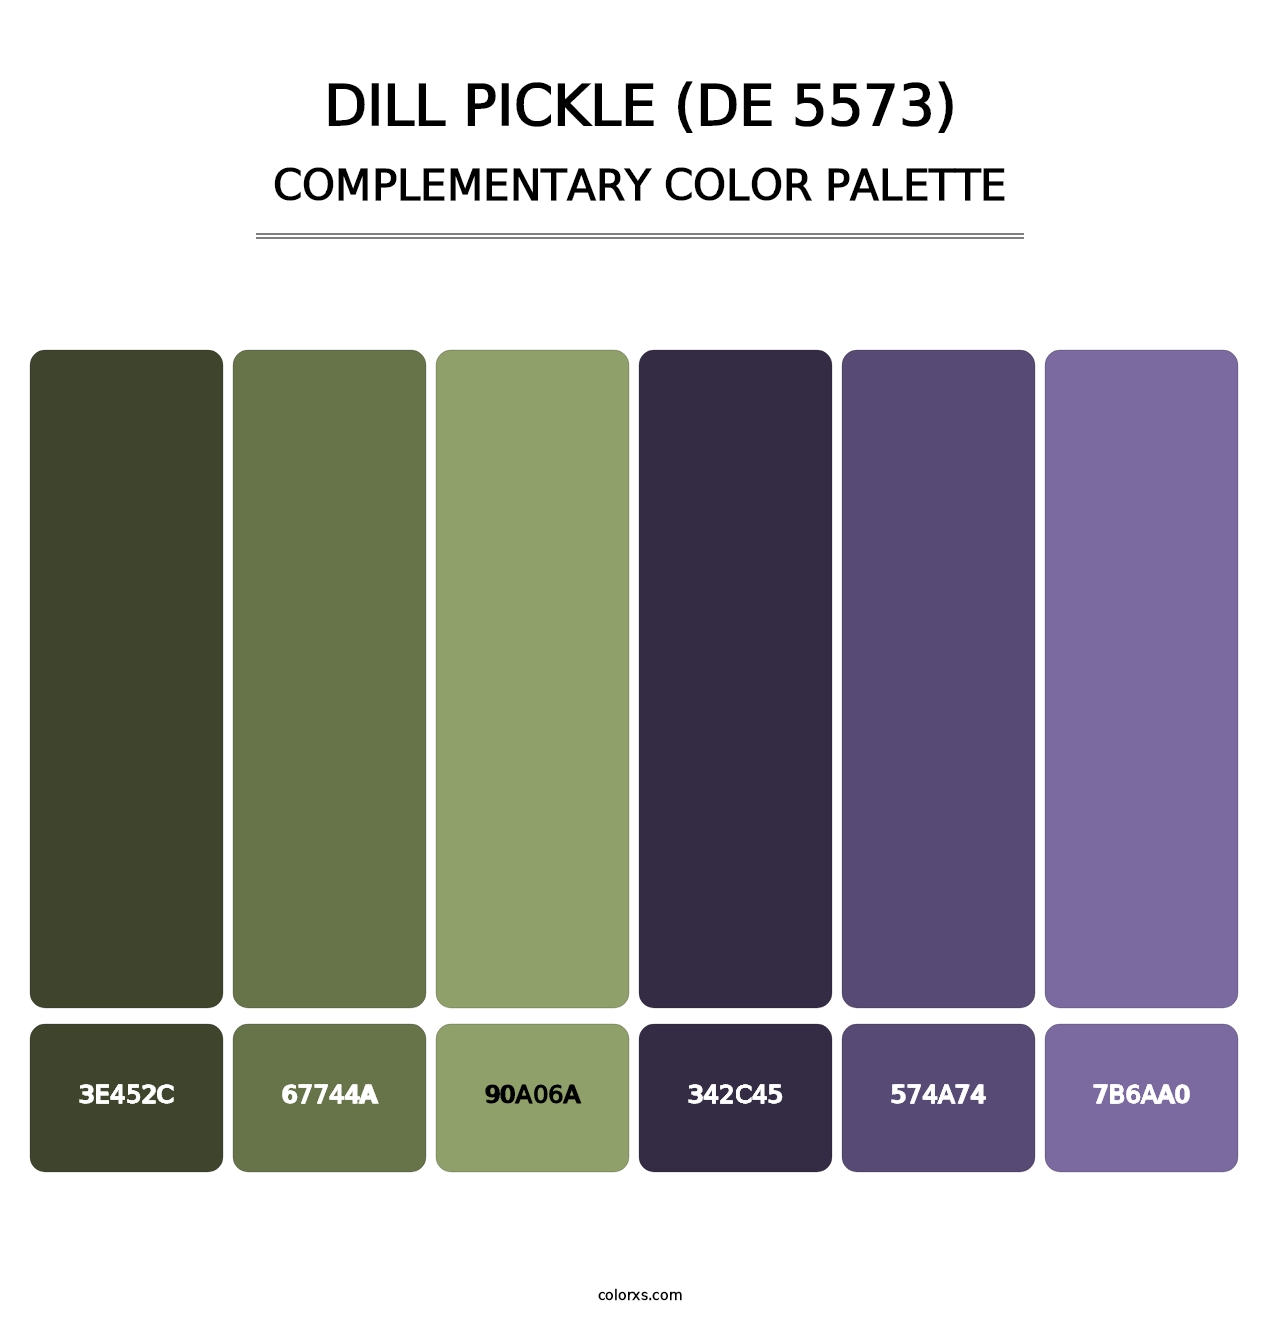 Dill Pickle (DE 5573) - Complementary Color Palette